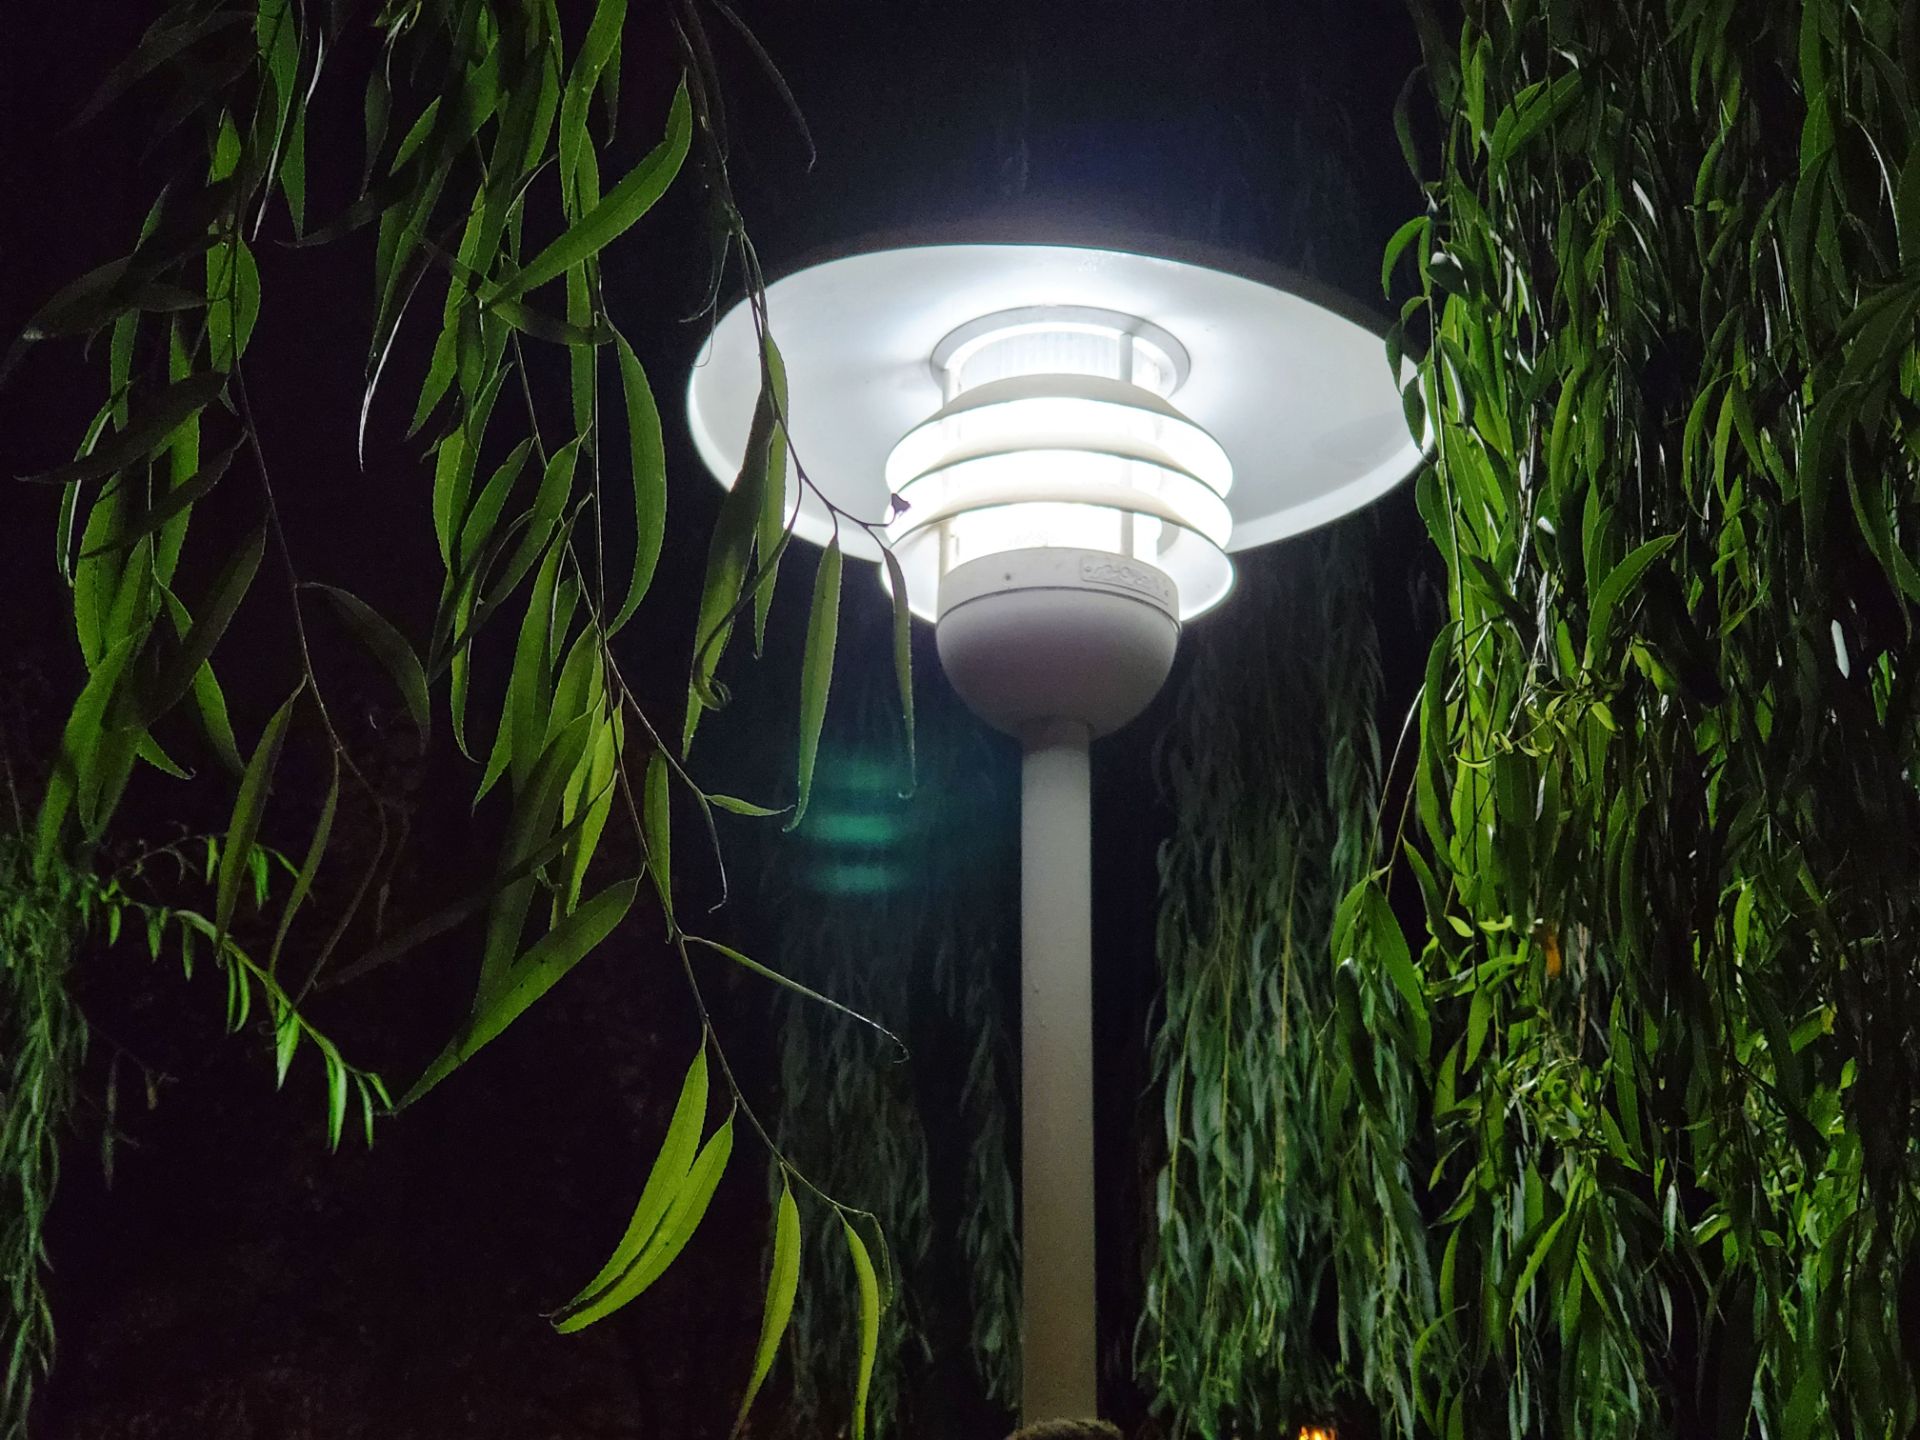 نمونه عکس 2x دوربین تله فوتو گلکسی زد فولد ۲ در تاریکی - چراغی در میان درختان پارک آب و آتش تهران